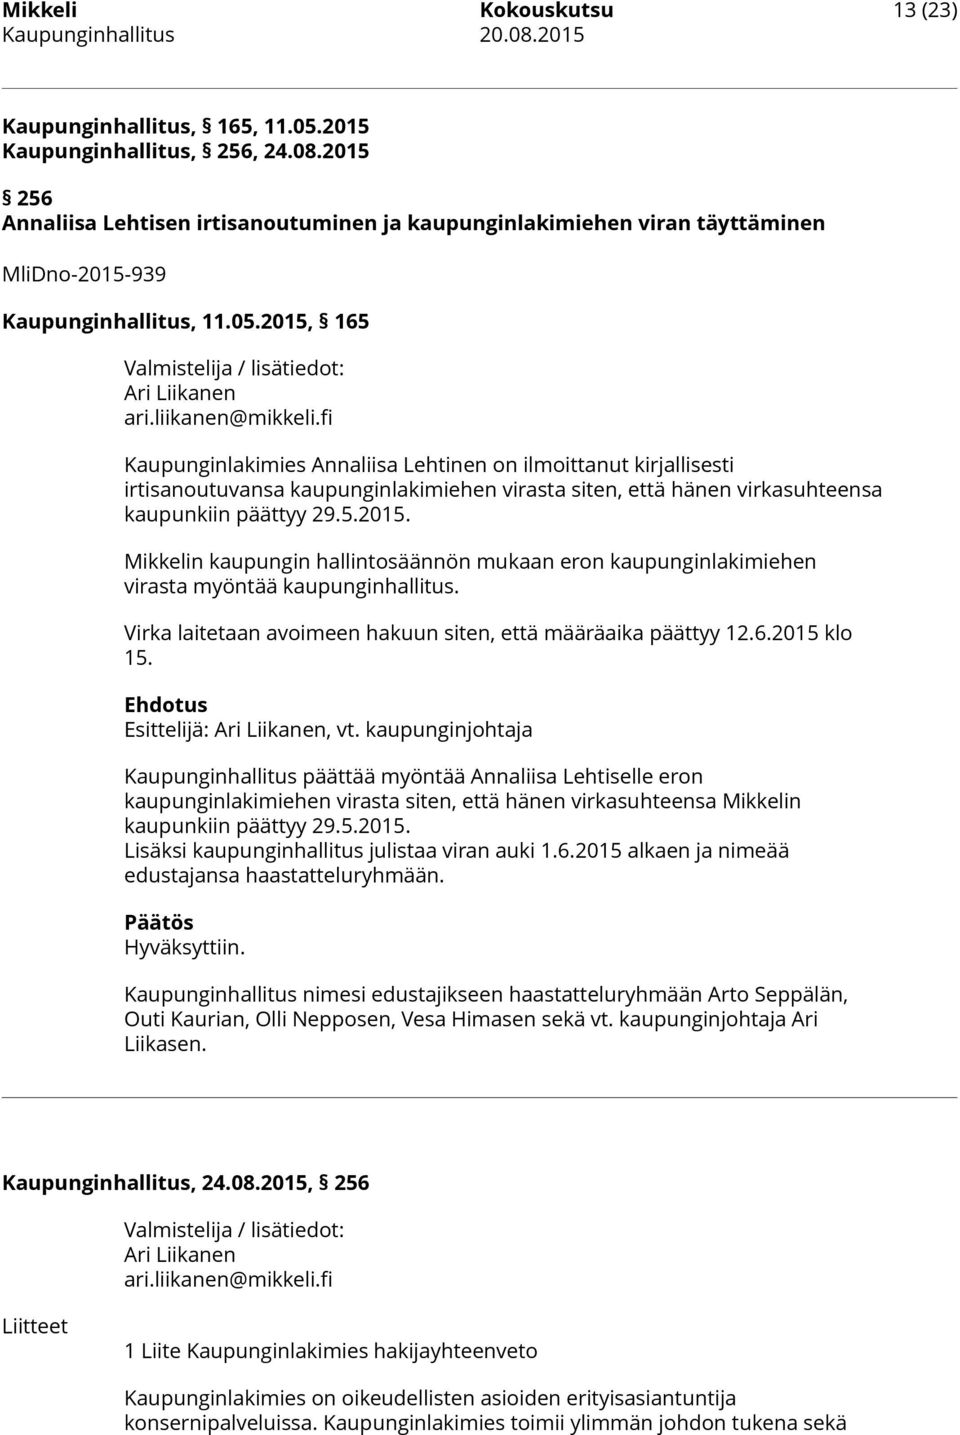 fi Kaupunginlakimies Annaliisa Lehtinen on ilmoittanut kirjallisesti irtisanoutuvansa kaupunginlakimiehen virasta siten, että hänen virkasuhteensa kaupunkiin päättyy 29.5.2015.